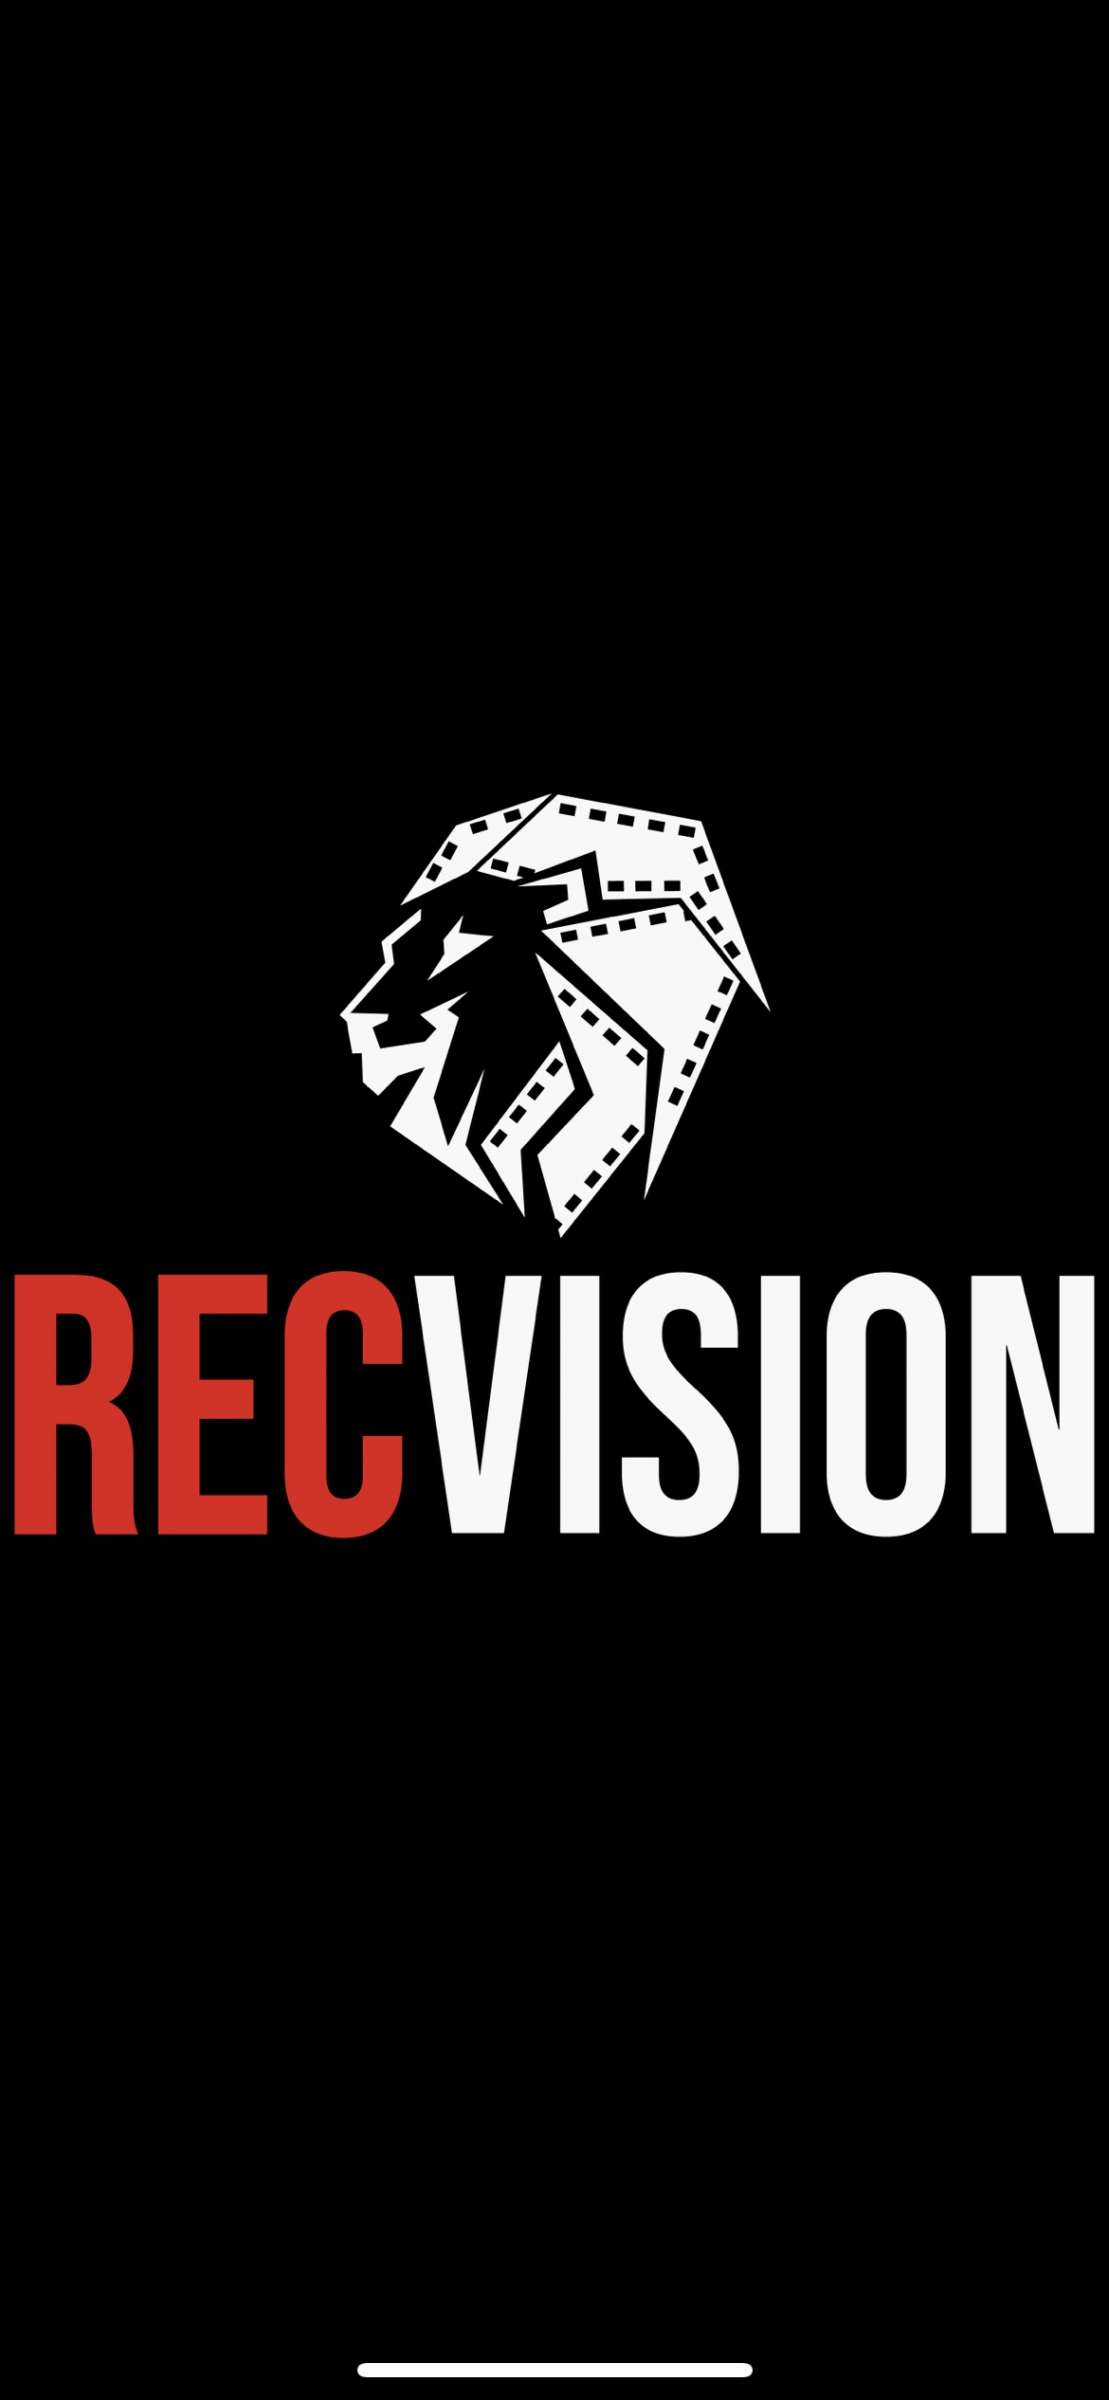 RecVision Videography - Schweinfurt - Werbefilm